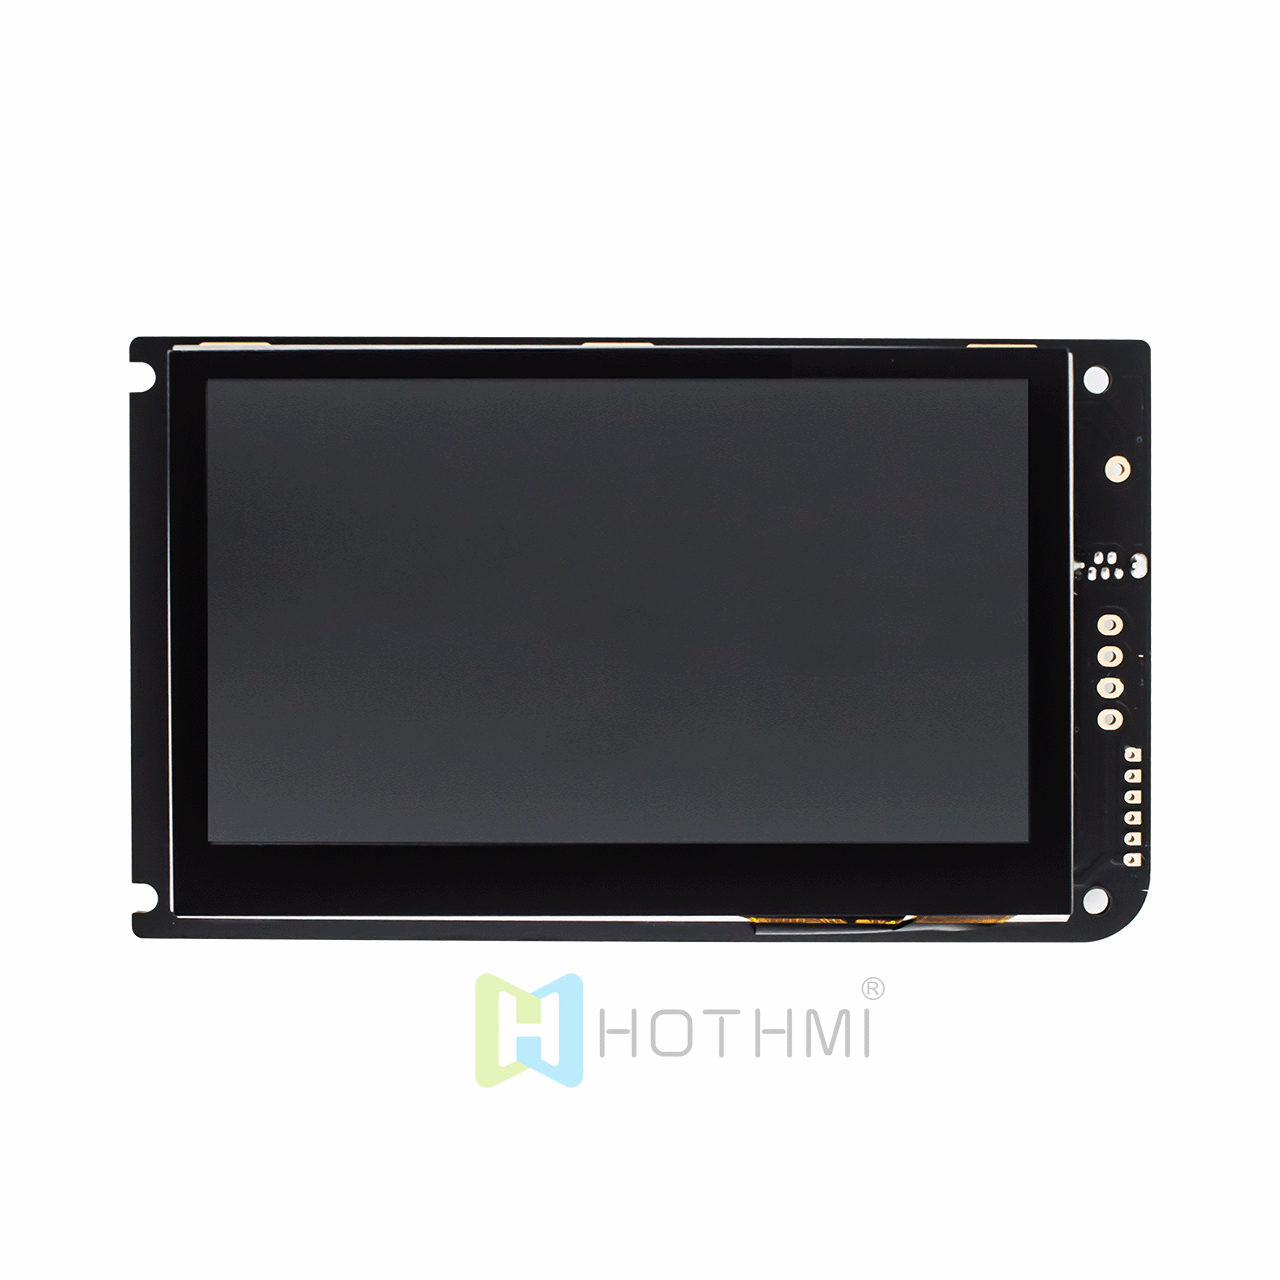 4.3英寸480x272点阵 智能串口屏 TFT液晶显示屏模块URAT 电容式触摸屏 HMI IPS 阳光下可读兼容树莓派